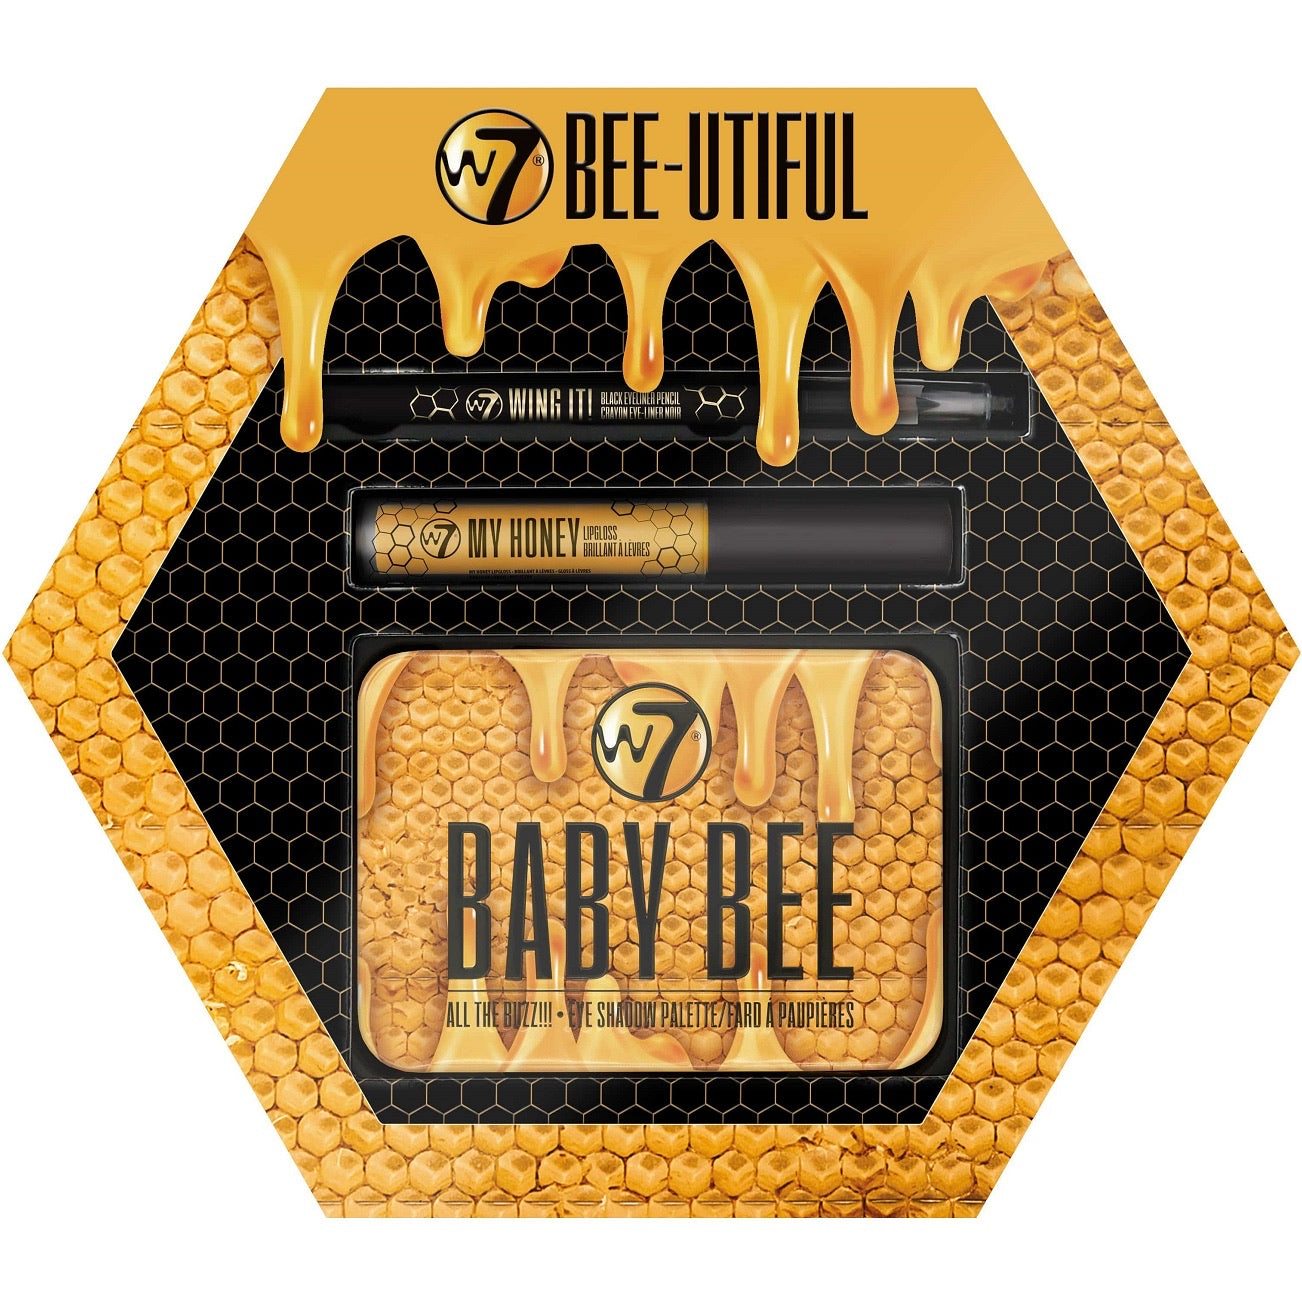 W7 Bee-Utiful Eye and Lip Makeup Gift Set